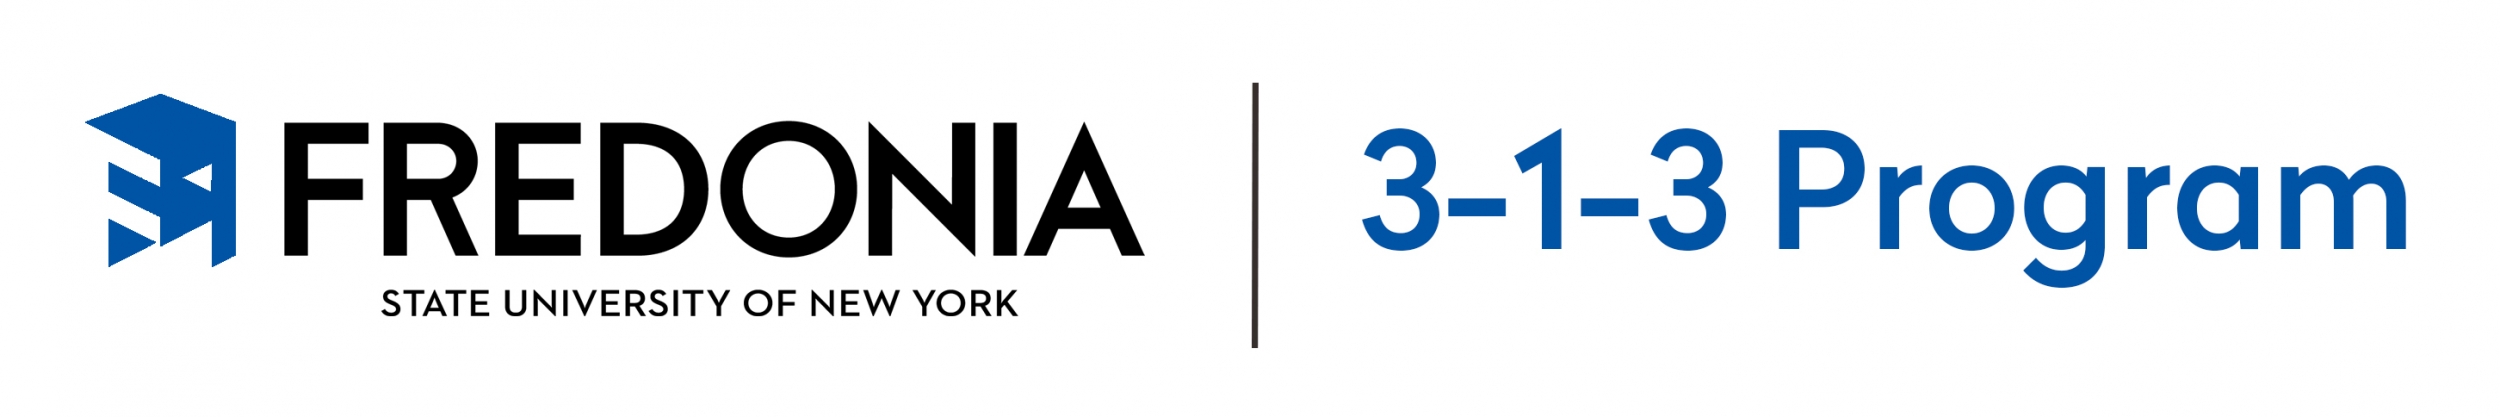 Fredonia 3-1-3 Program Logo